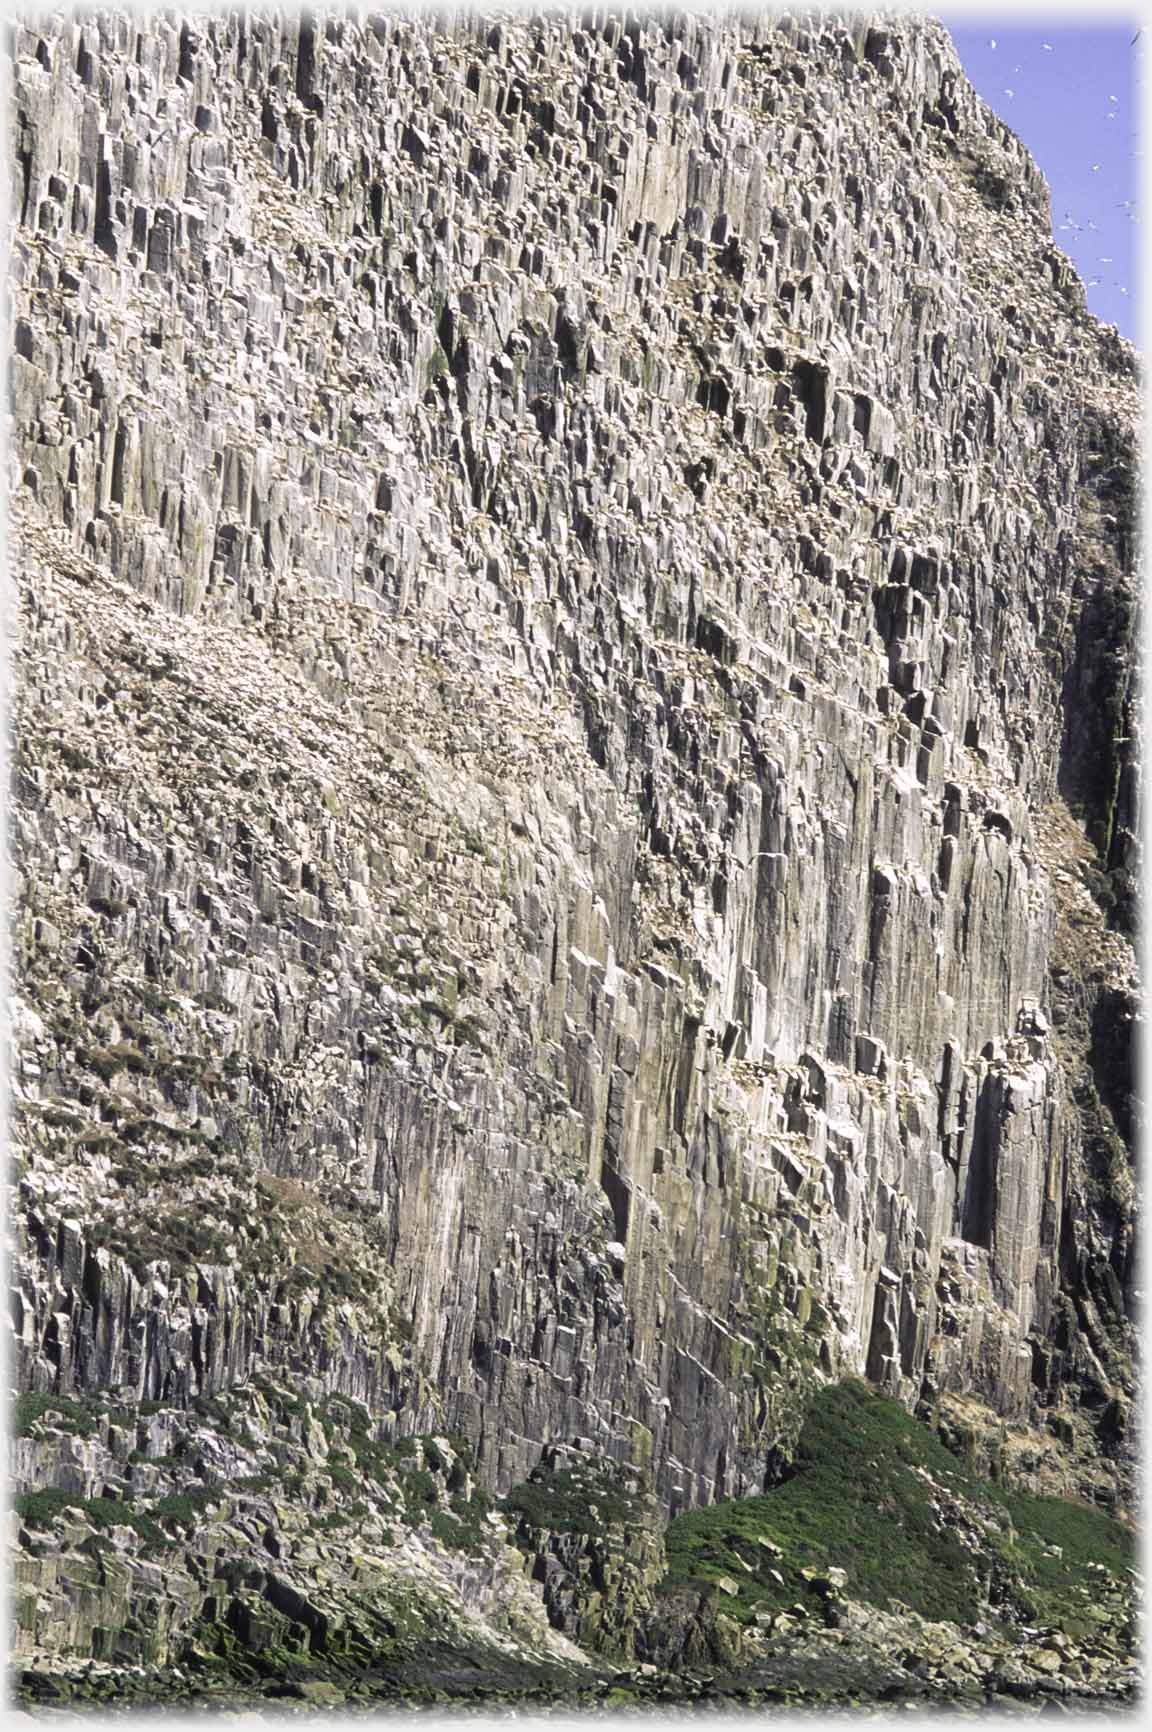 Cliff face of basalt pillers.